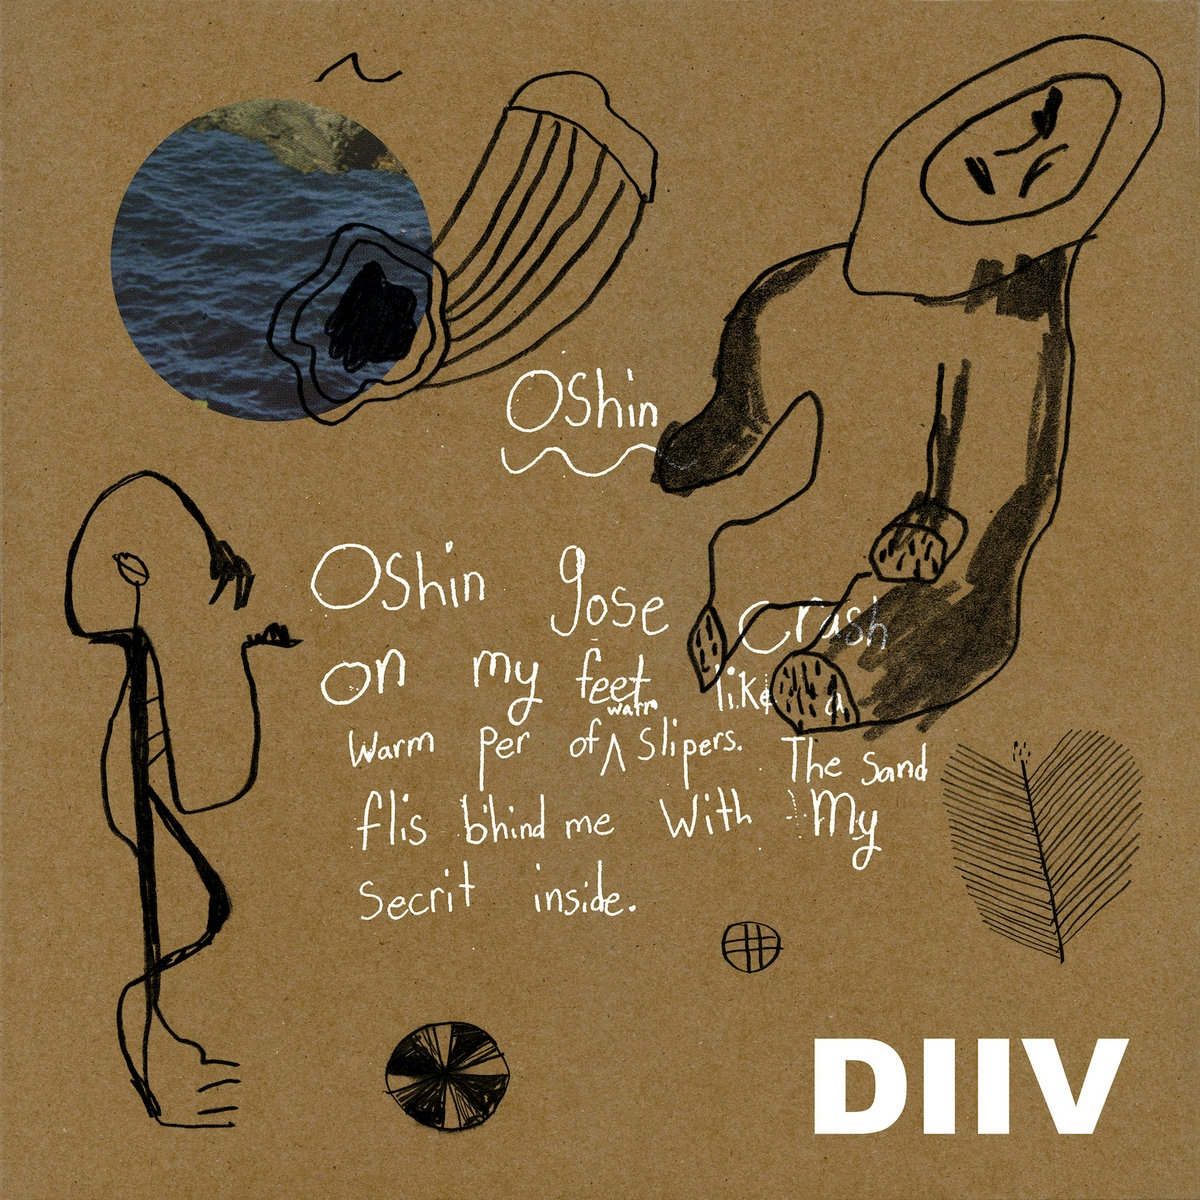 Album artwork for Album artwork for Oshin (10th Anniversary Edition) by DIIV by Oshin (10th Anniversary Edition) - DIIV